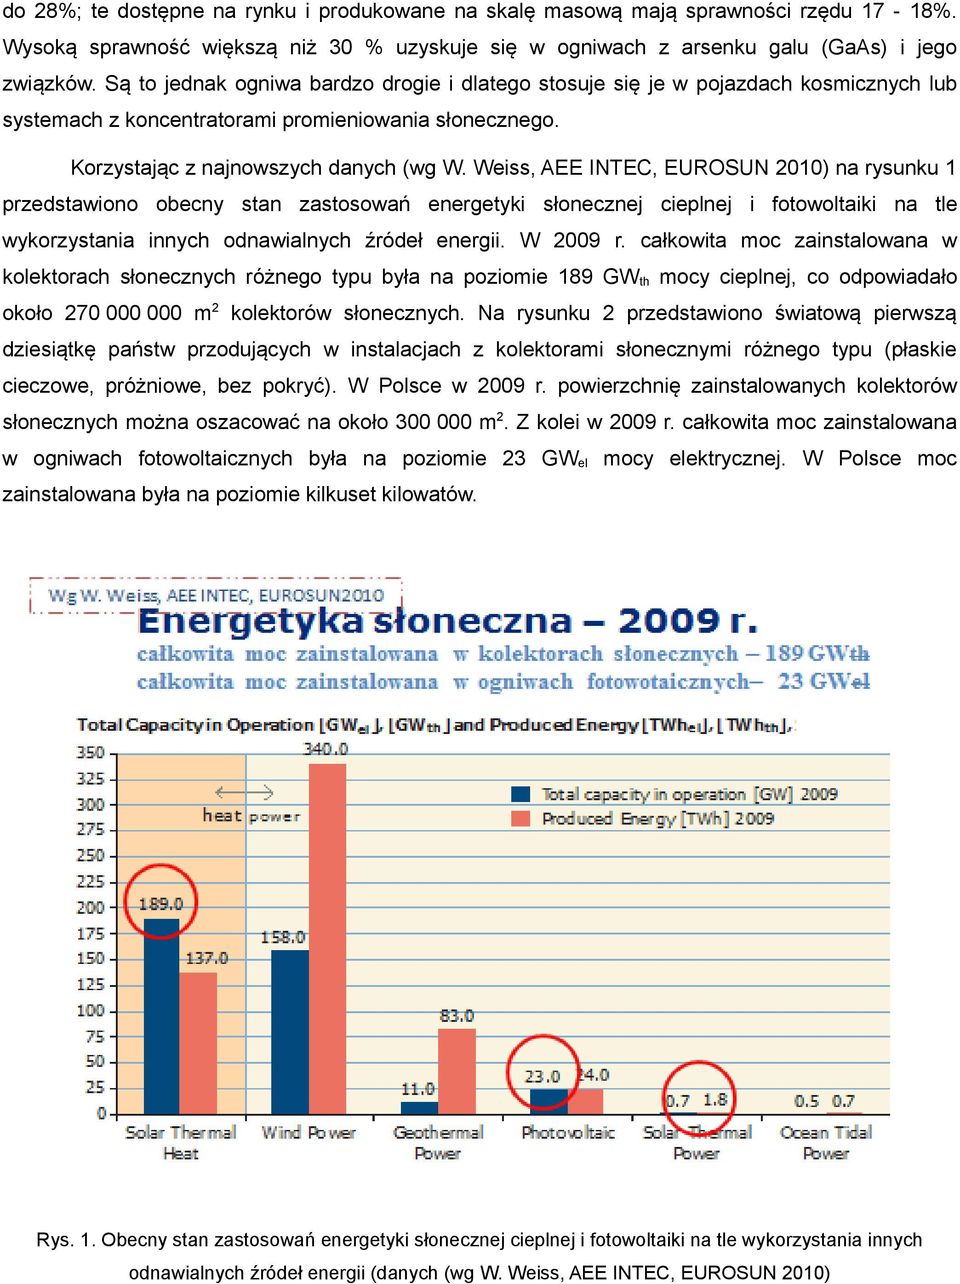 Weiss, AEE INTEC, EUROSUN 2010) na rysunku 1 przedstawiono obecny stan zastosowań energetyki słonecznej cieplnej i fotowoltaiki na tle wykorzystania innych odnawialnych źródeł energii. W 2009 r.